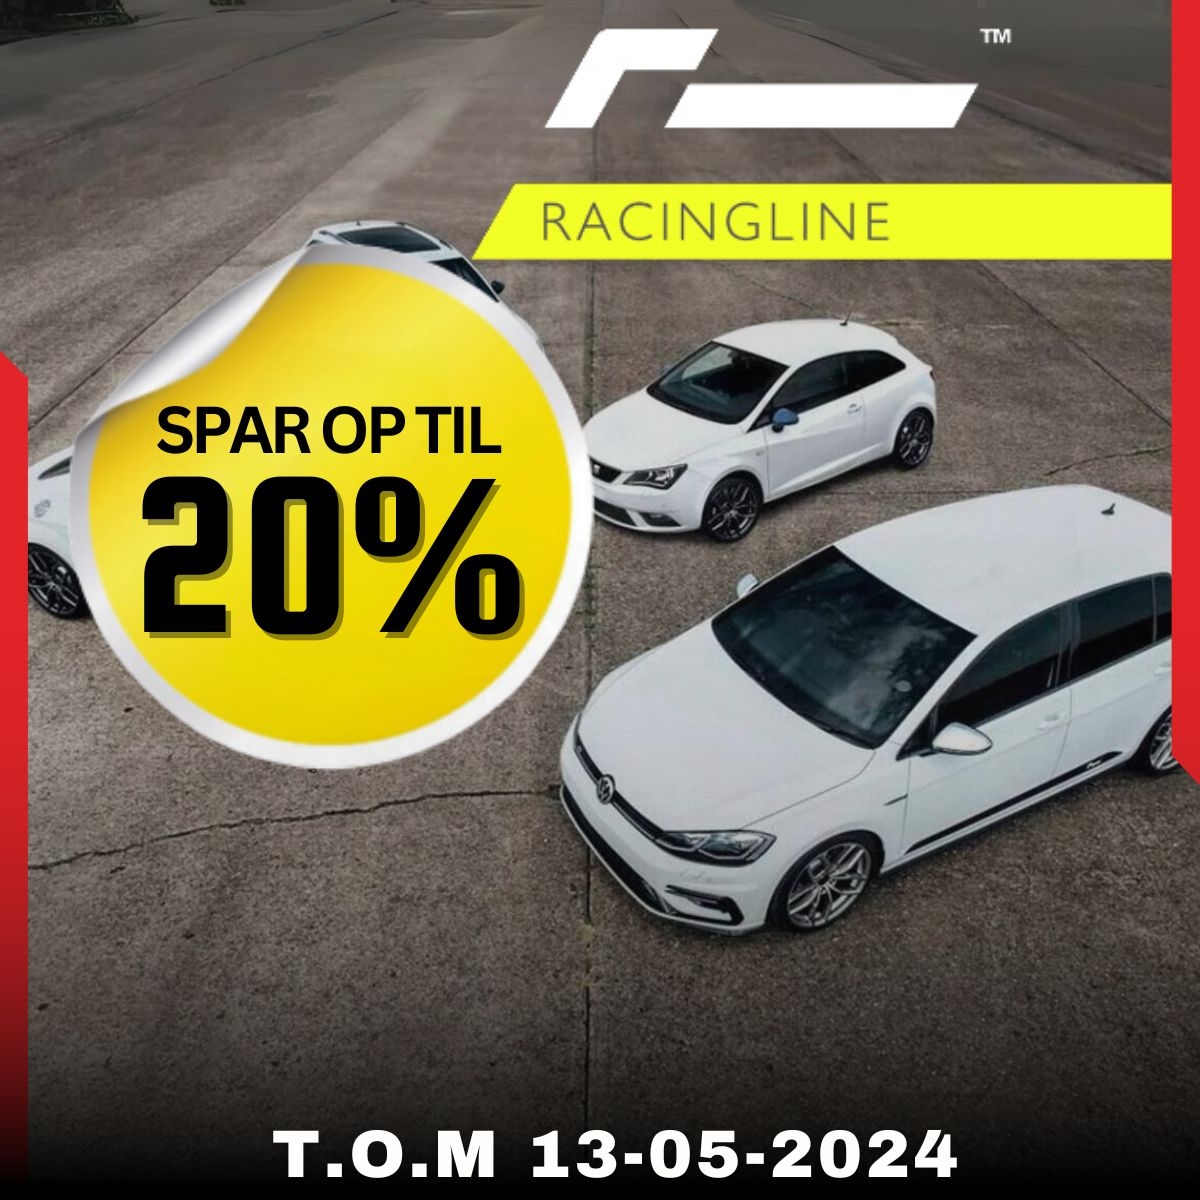 Spar op til 20% på Racingline og gejl bilen